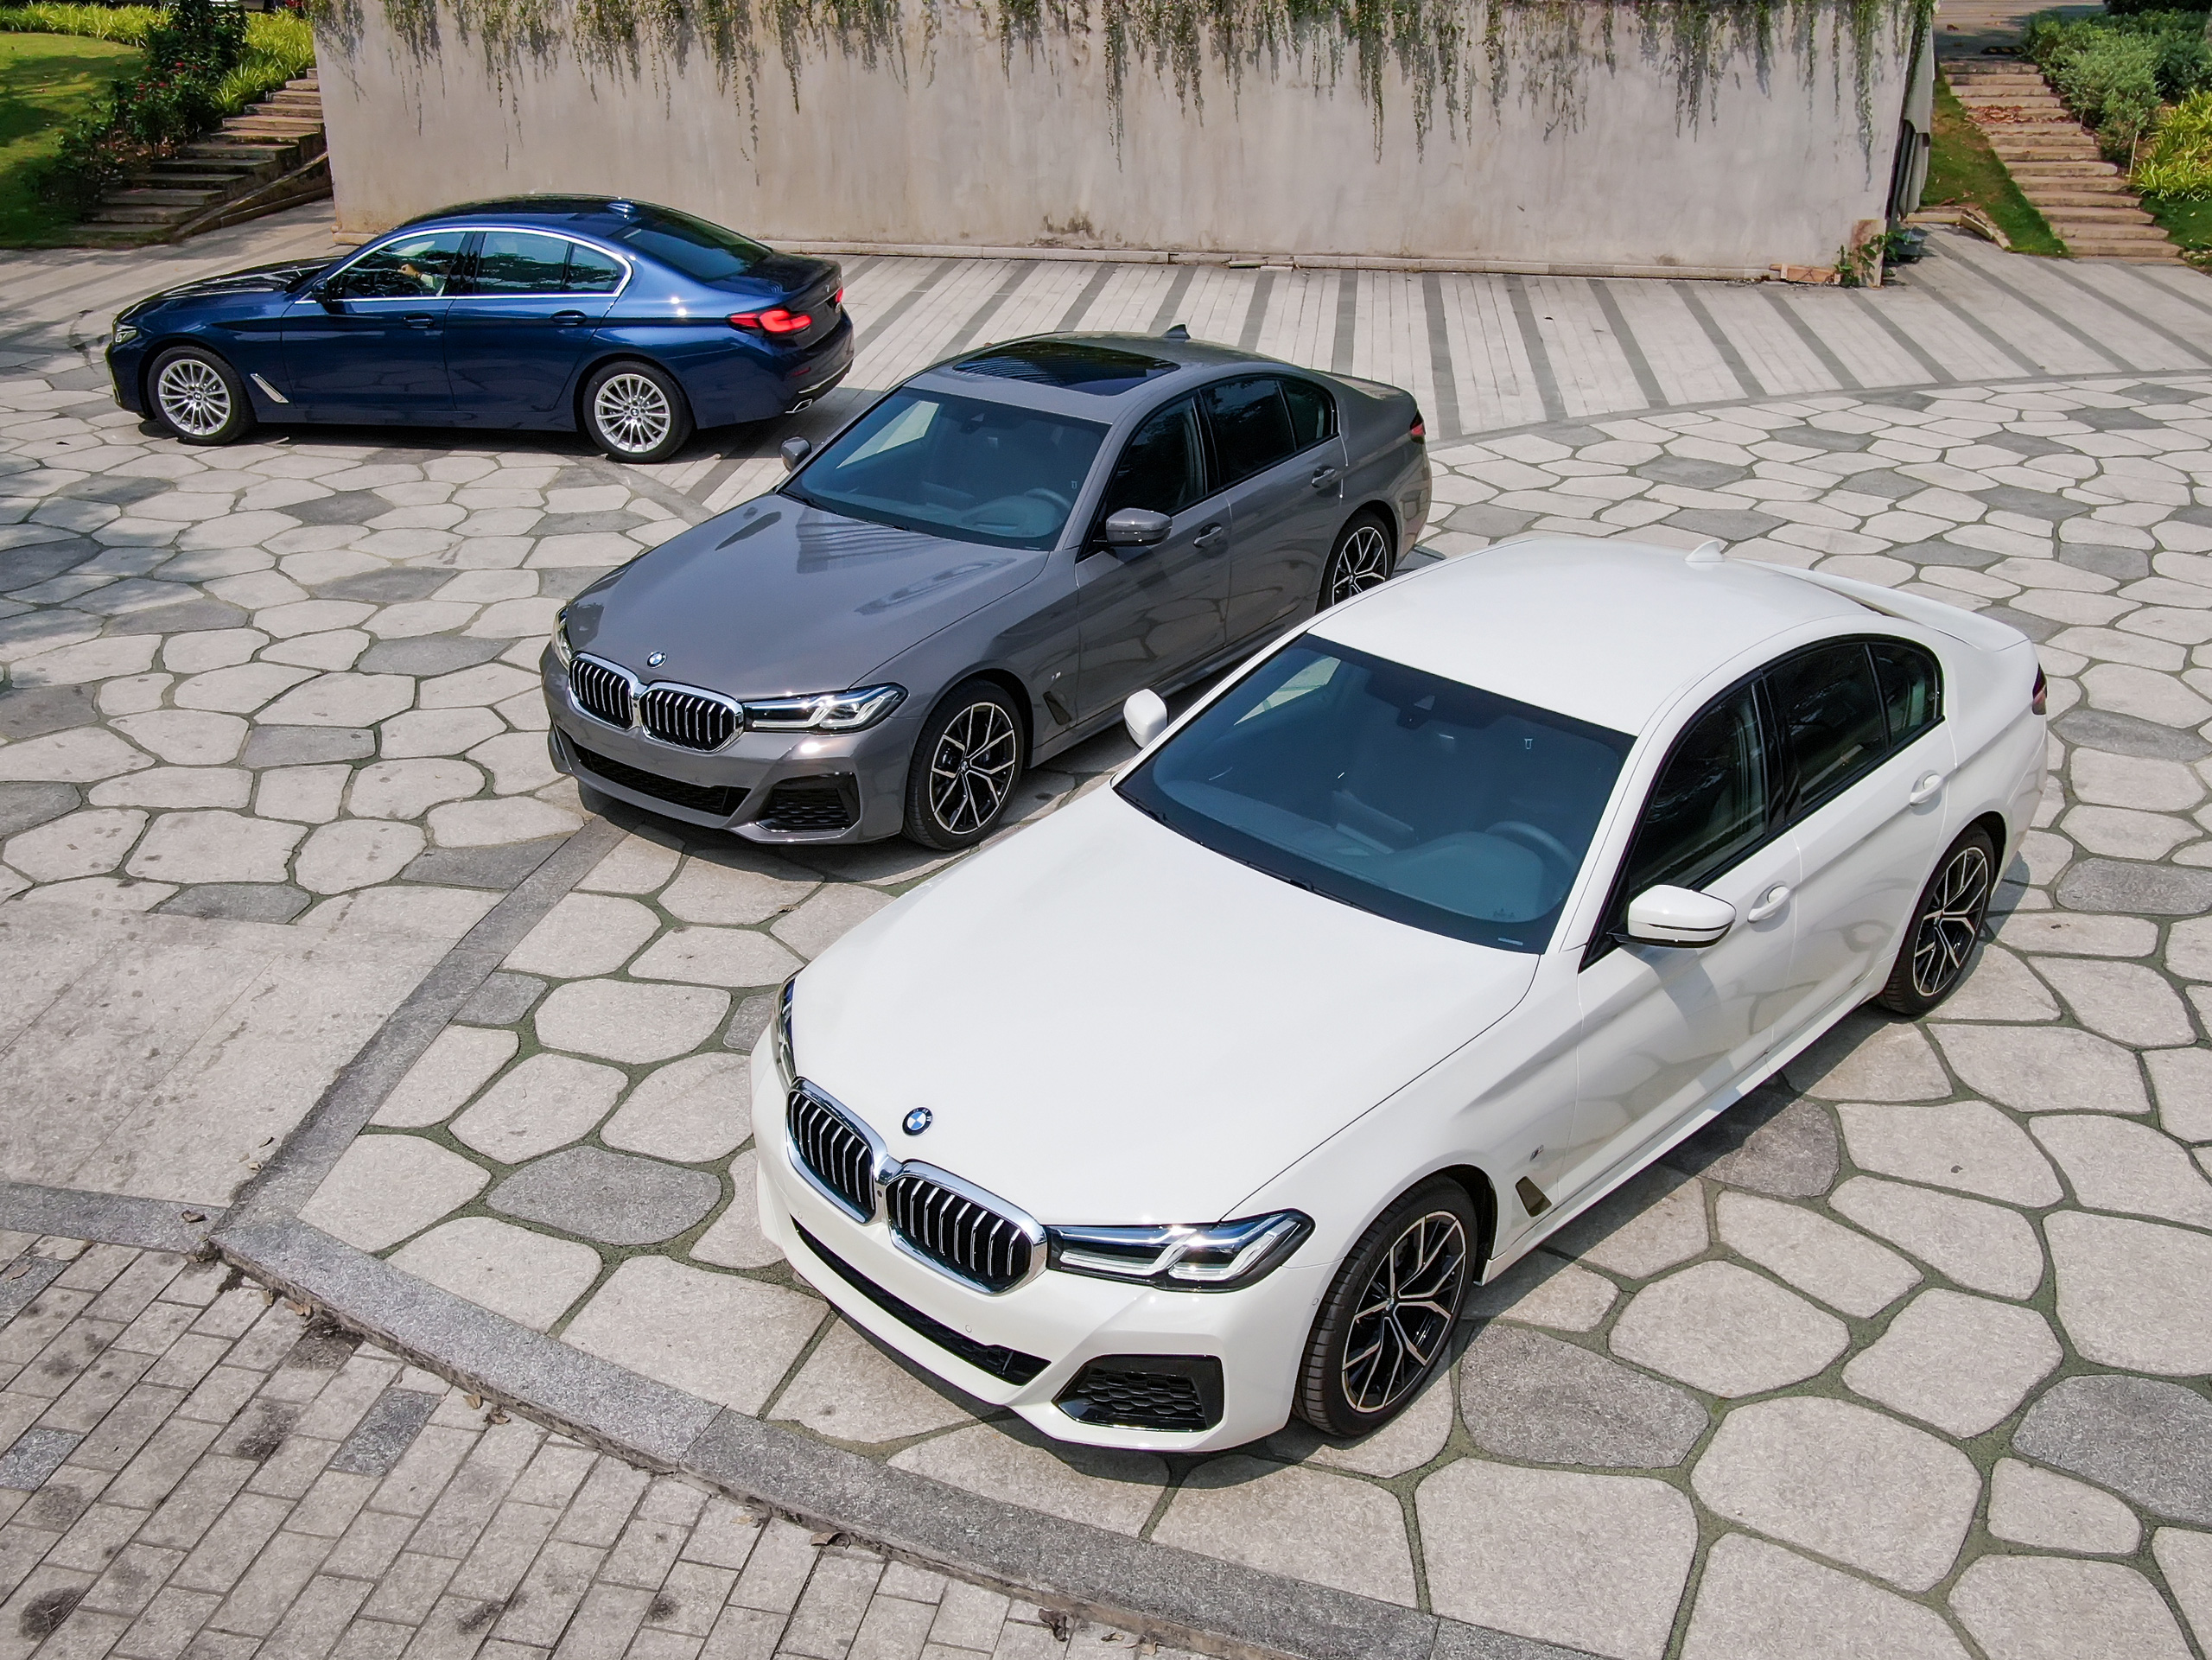 ĐÁNH GIÁ XE BMW 520i MSport 2021 Tái sinh